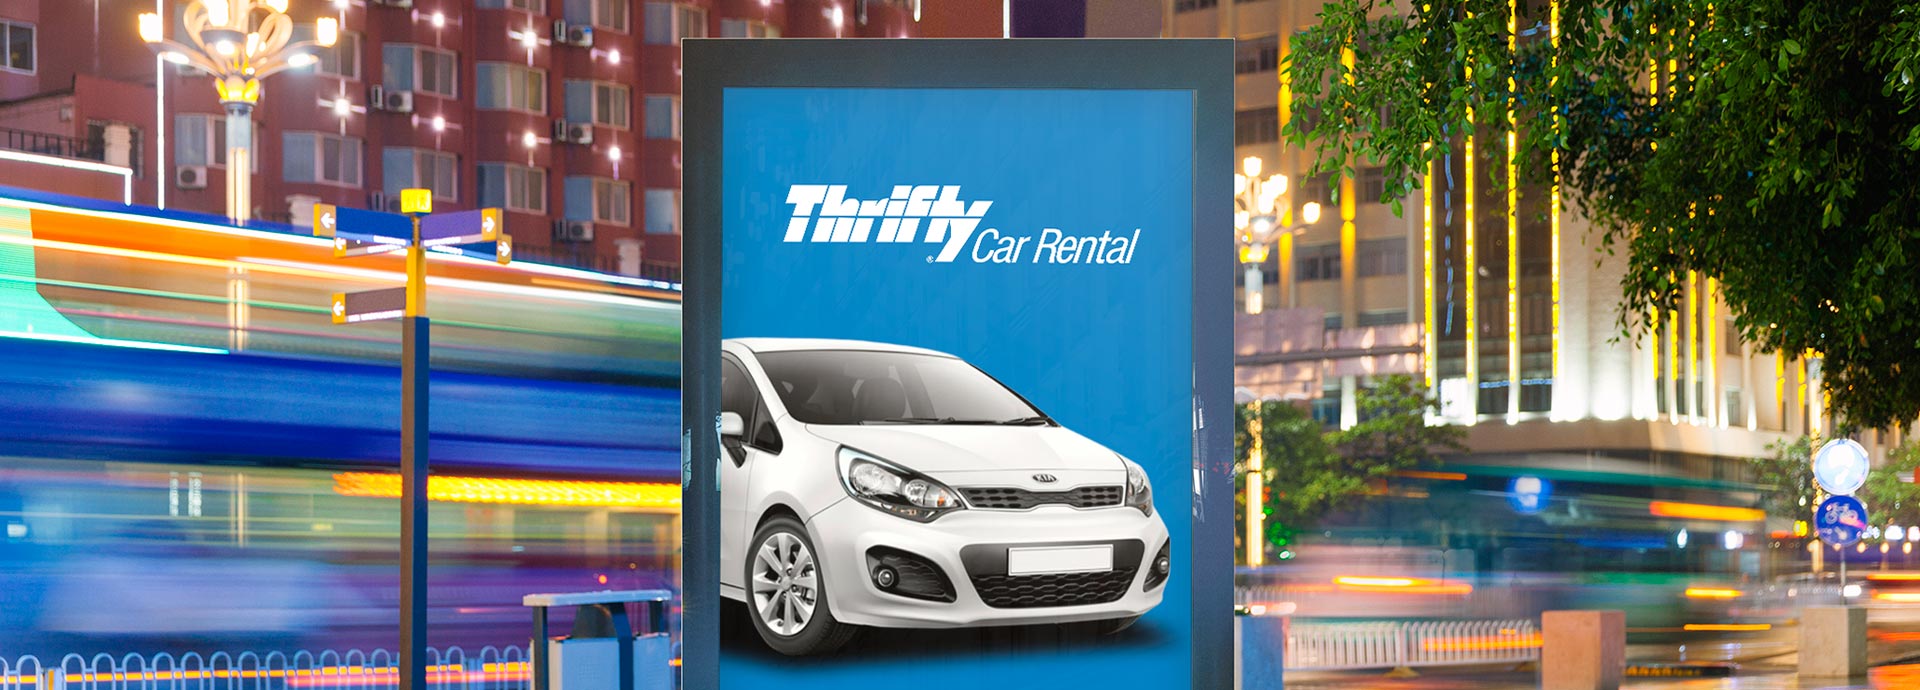 Thrifty Rent-a-Car - Melhores Preços em Aluguel de Carros